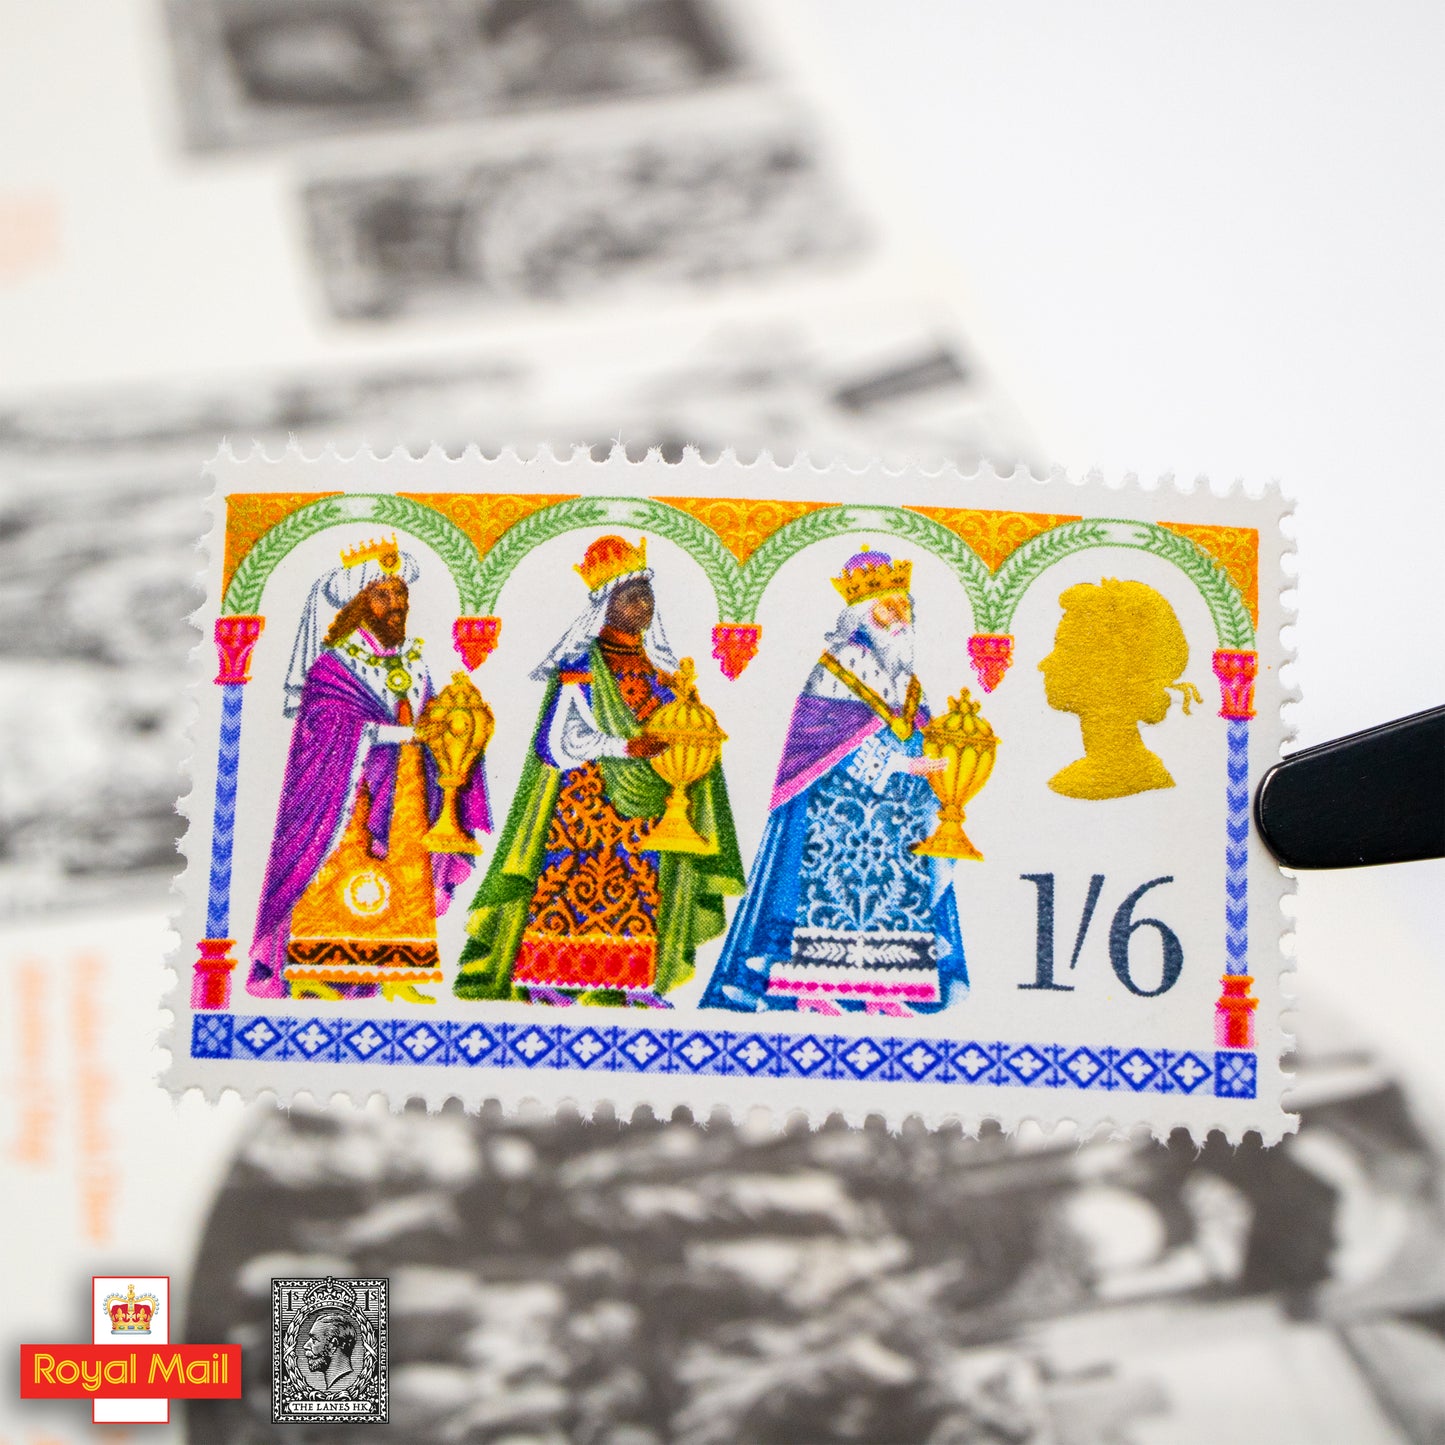 #014: 1969年 聖誕節 紀念郵票展示包